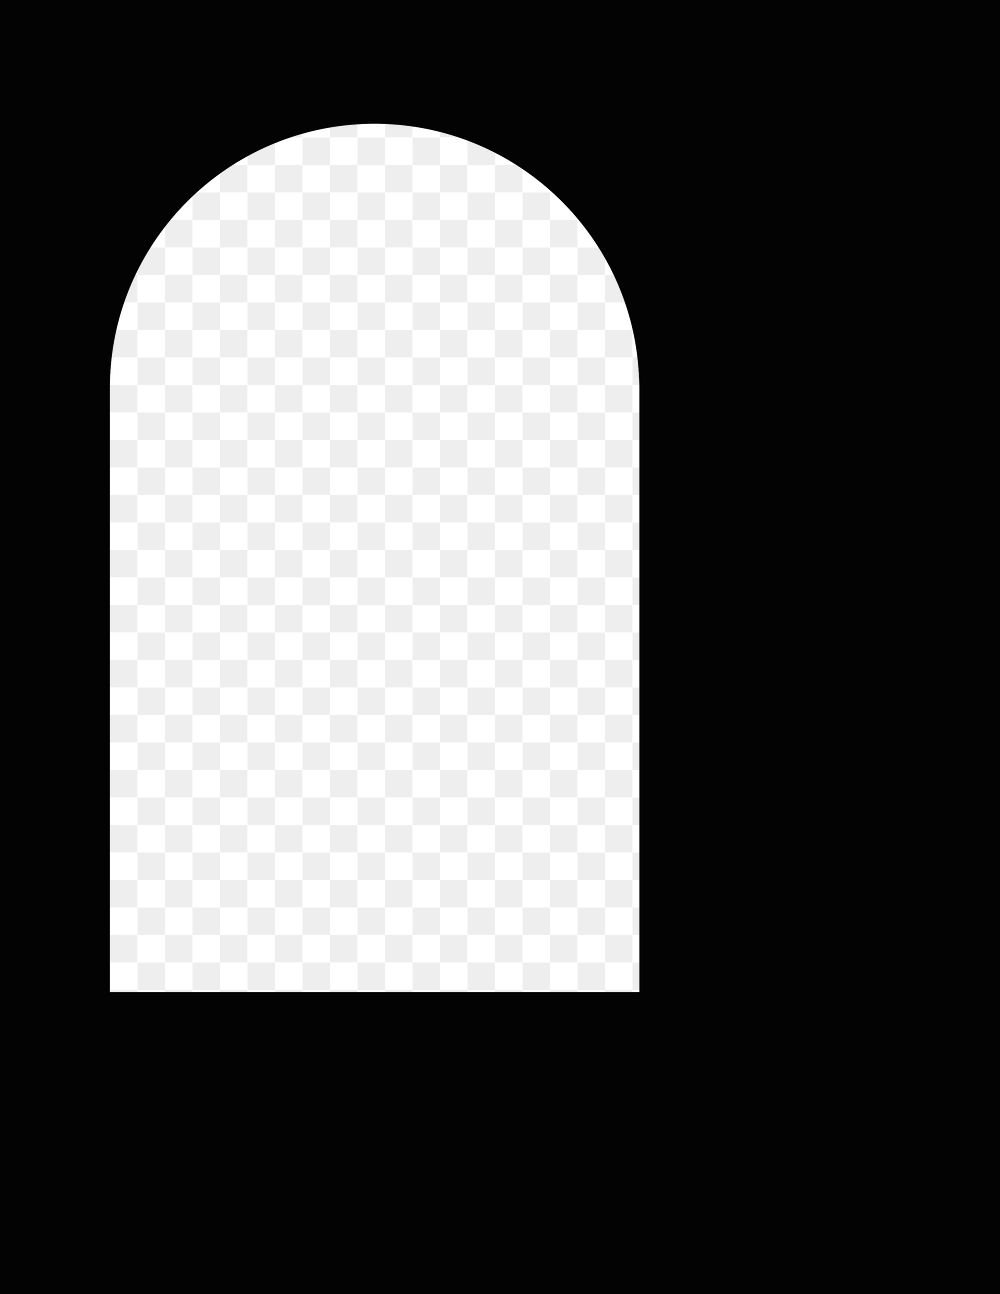 Arch frame png sticker, black background, transparent design